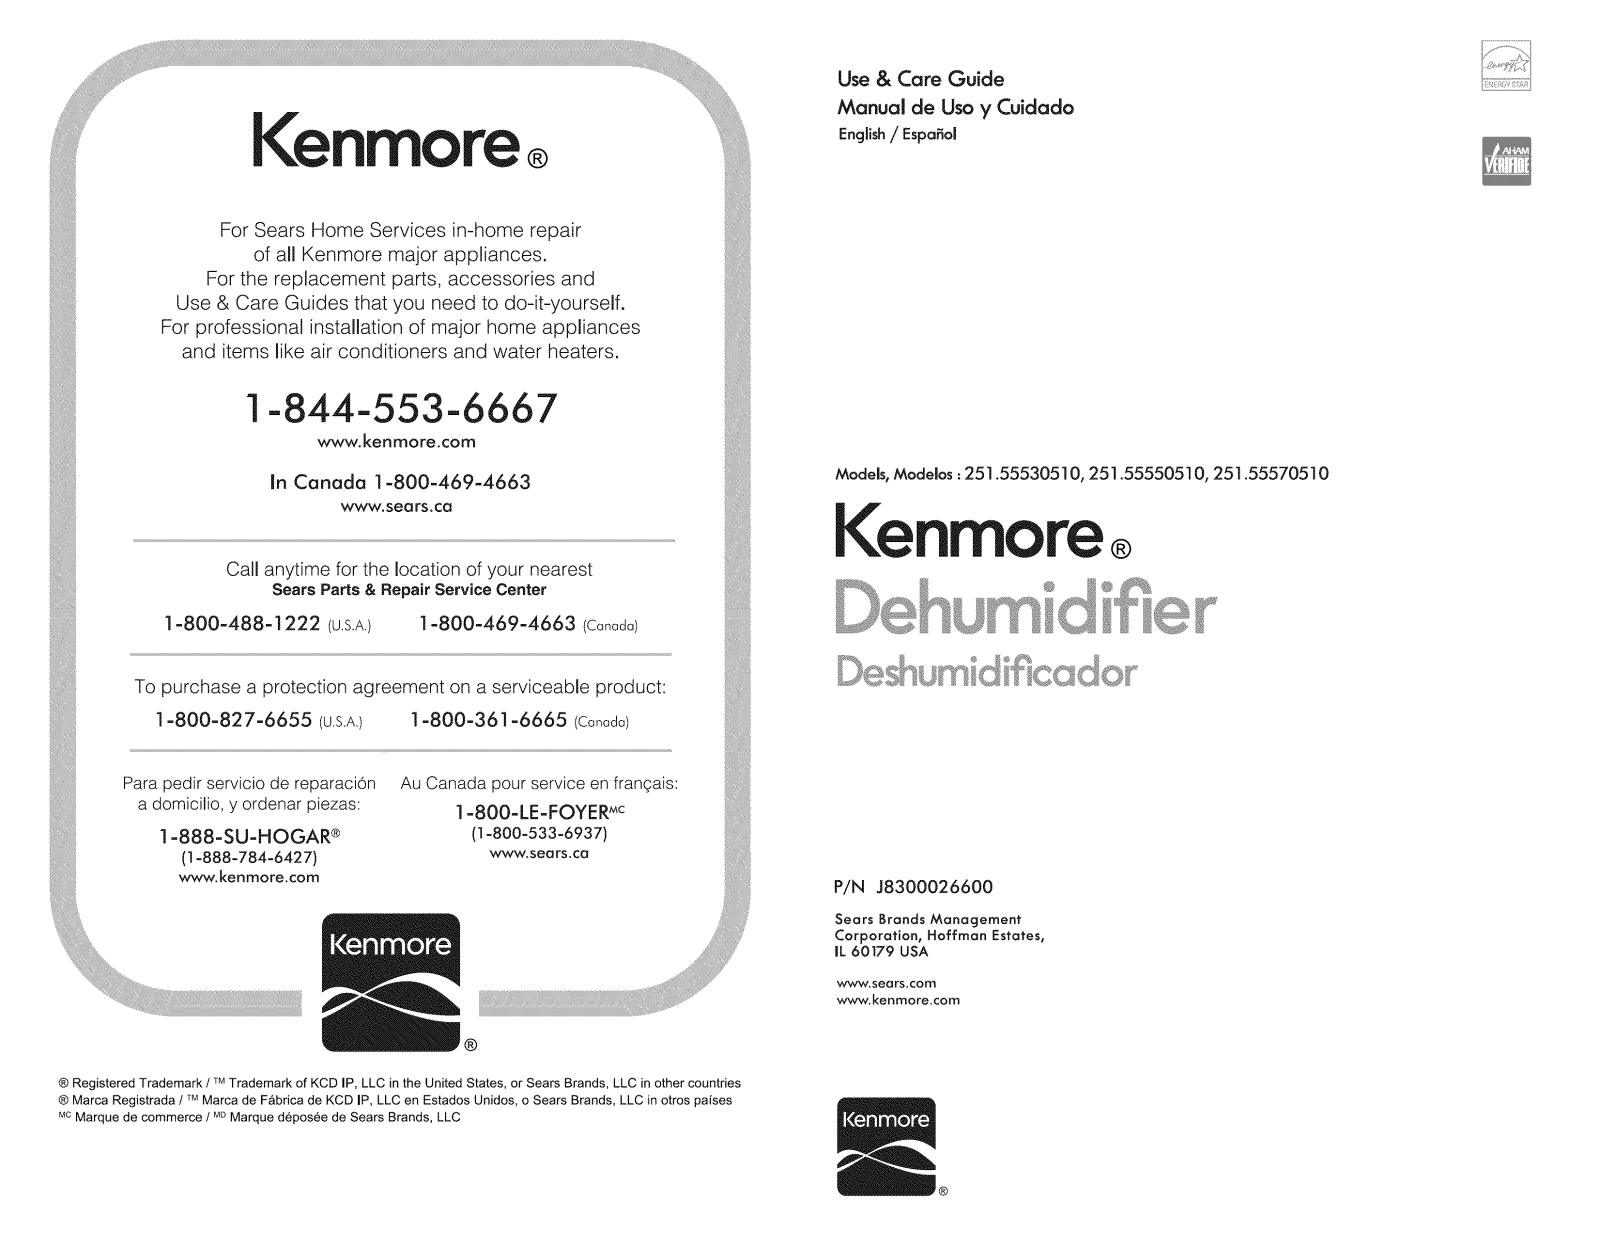 Kenmore 251.55570510, 251.55550510, 251.55530510 User Manual